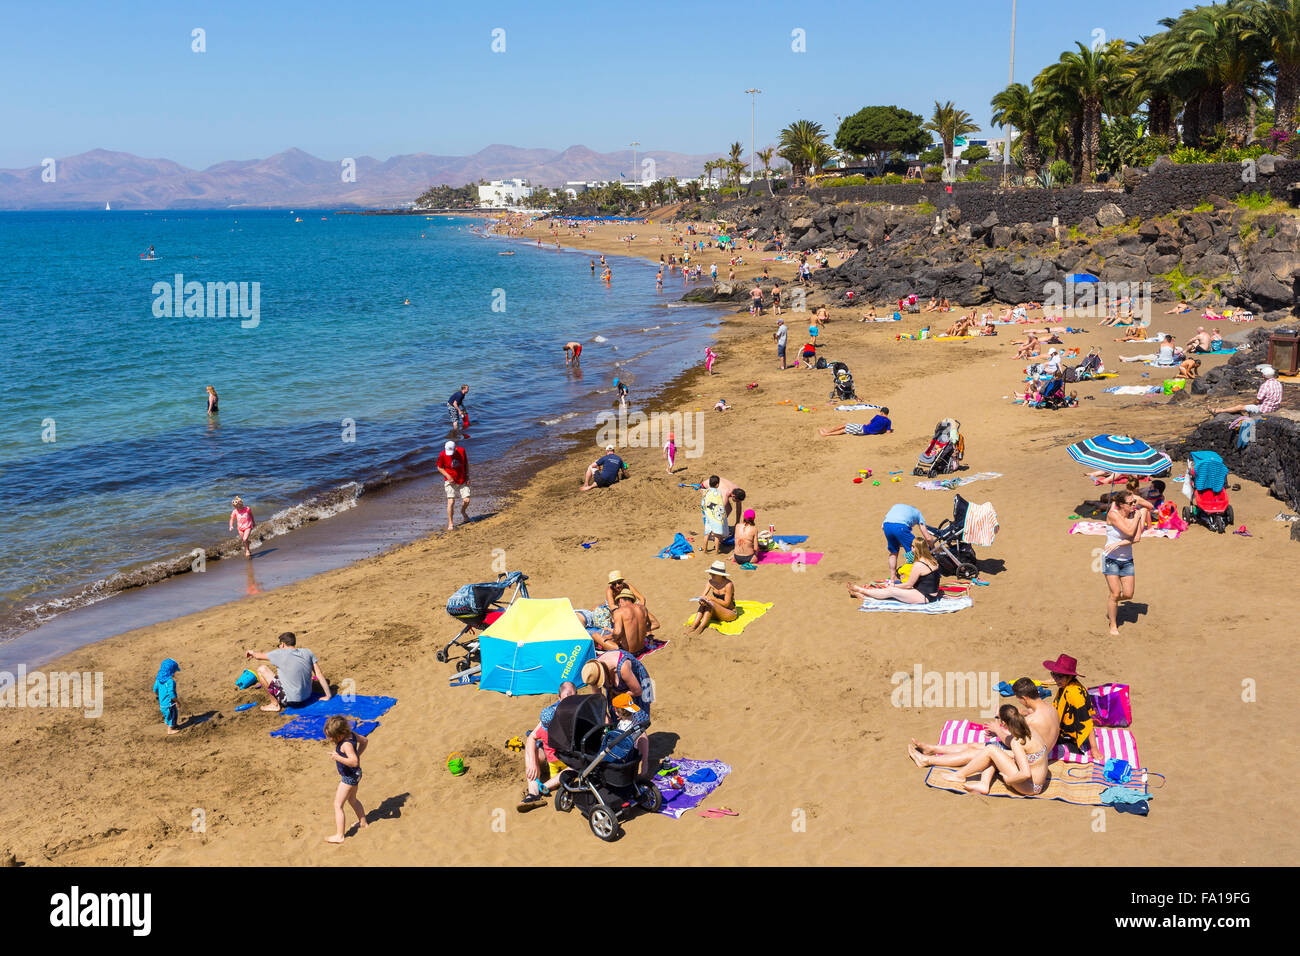 Playa Grande, la playa de la ciudad de Puerto del Carmen, Lanzarote, Islas Canarias, España, sur de Europa Foto de stock